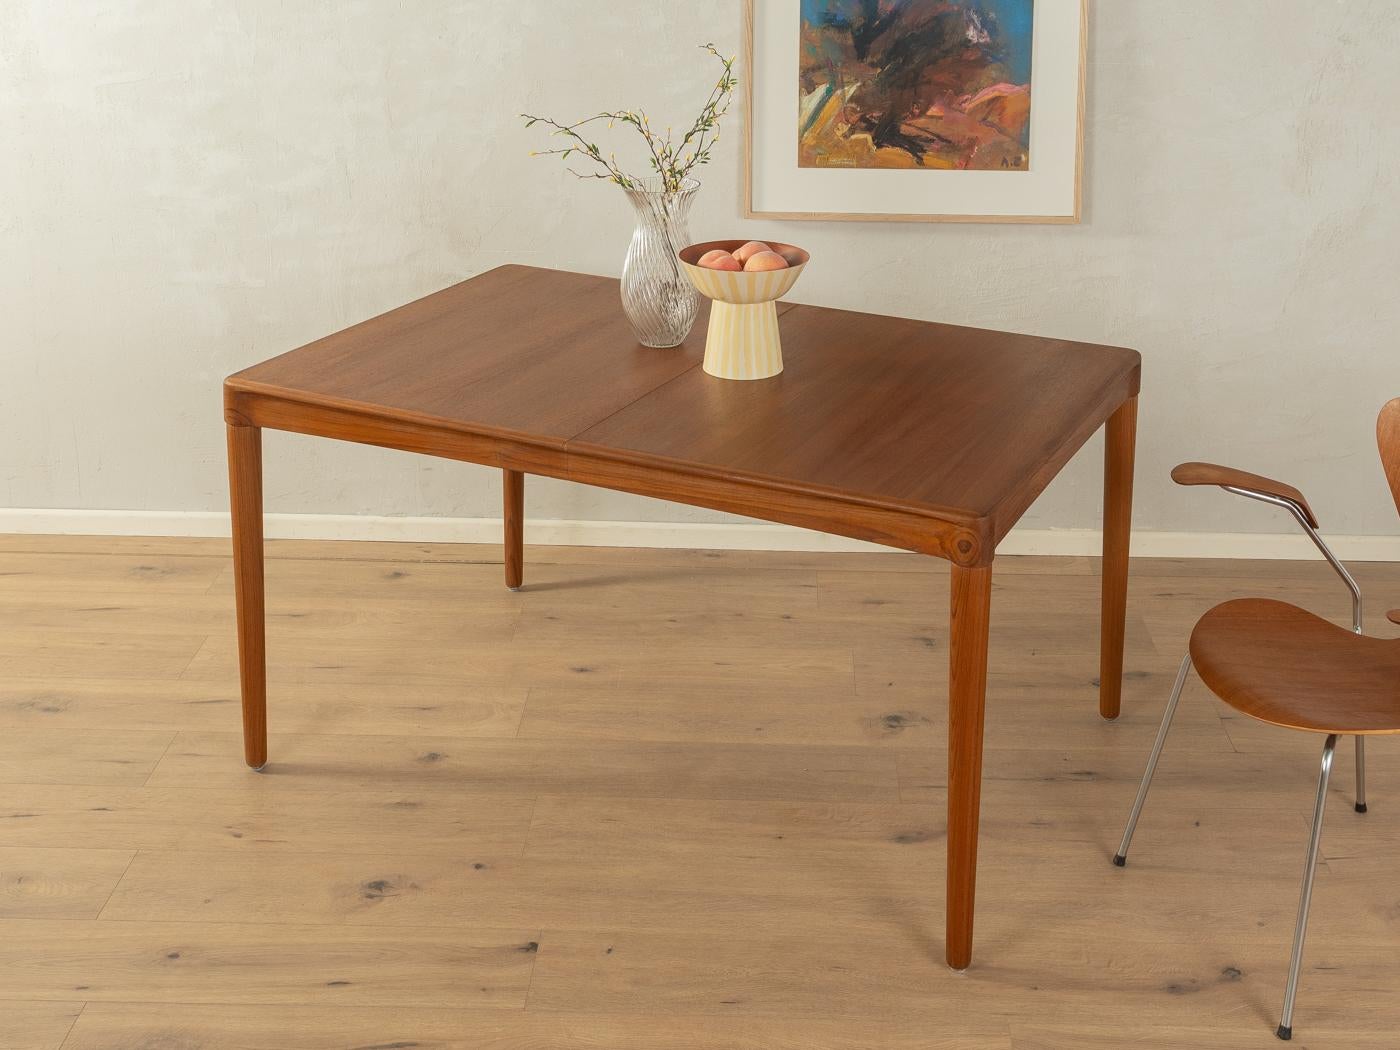 Seltener ausziehbarer Teak-Esstisch aus den 1960er Jahren von H.W. Klein für Bramin. Massives Gestell und furnierte Tischplatte mit Massivholzkante. Die Verlängerungsplatte kann unter der Tischplatte verstaut werden.

Qualitätsmerkmale:

vollendetes